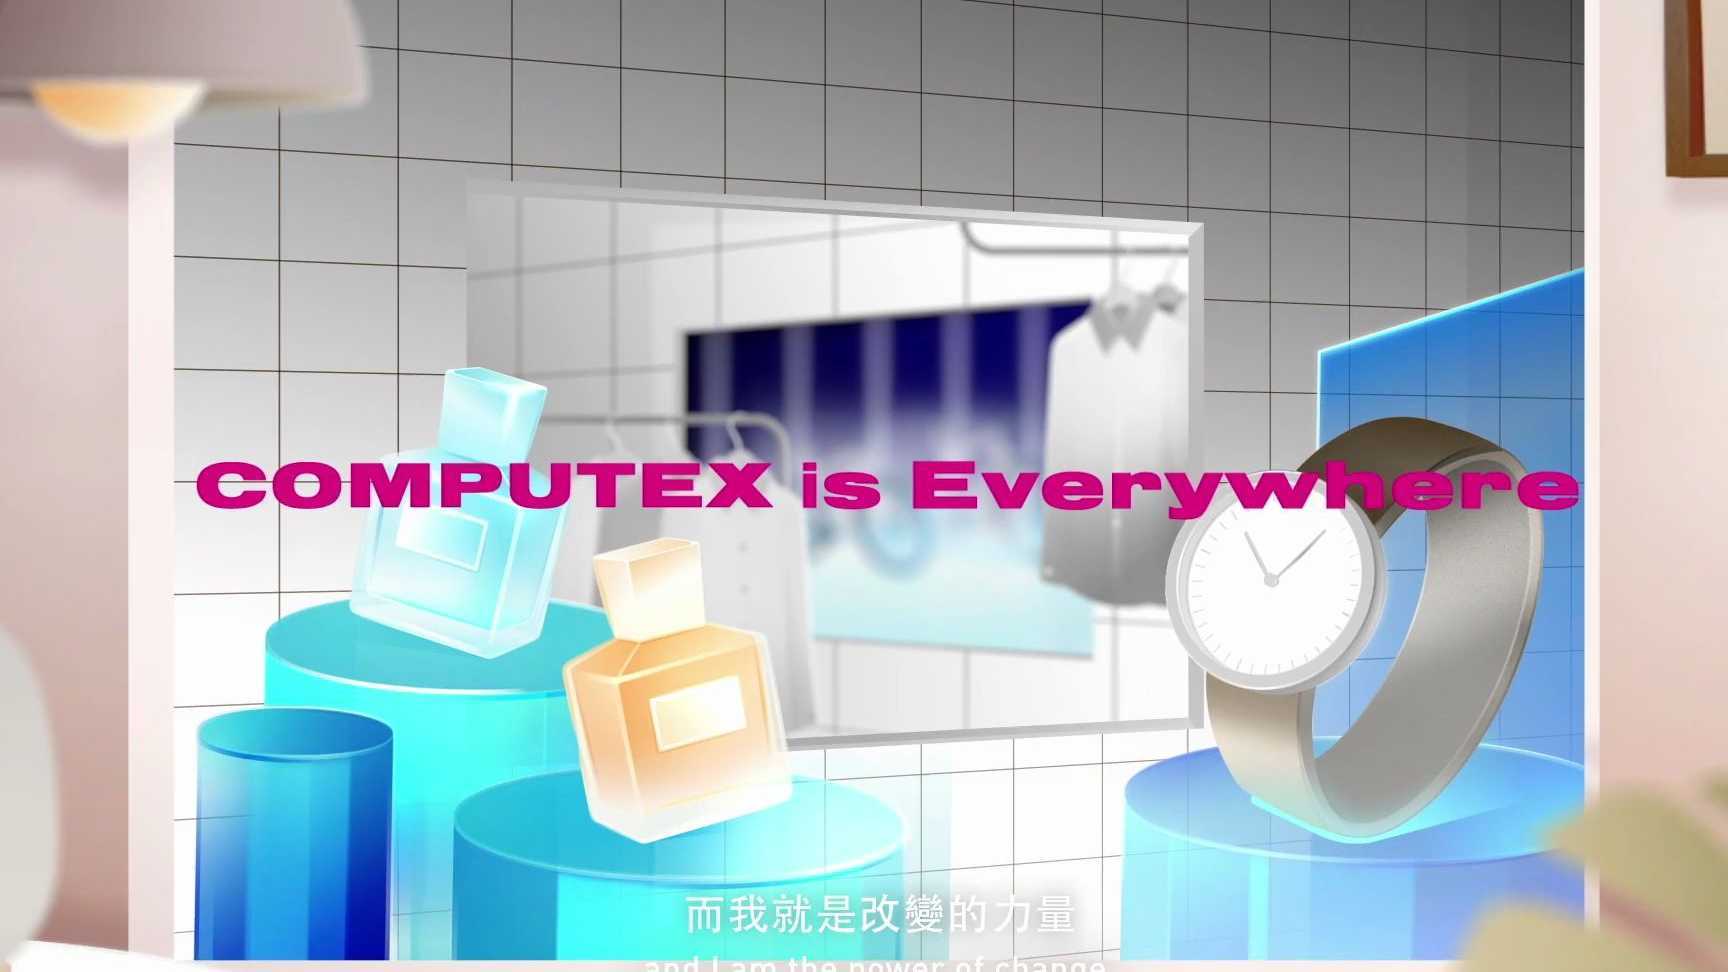 【动态设计】COMPUTEX Brand Image Film